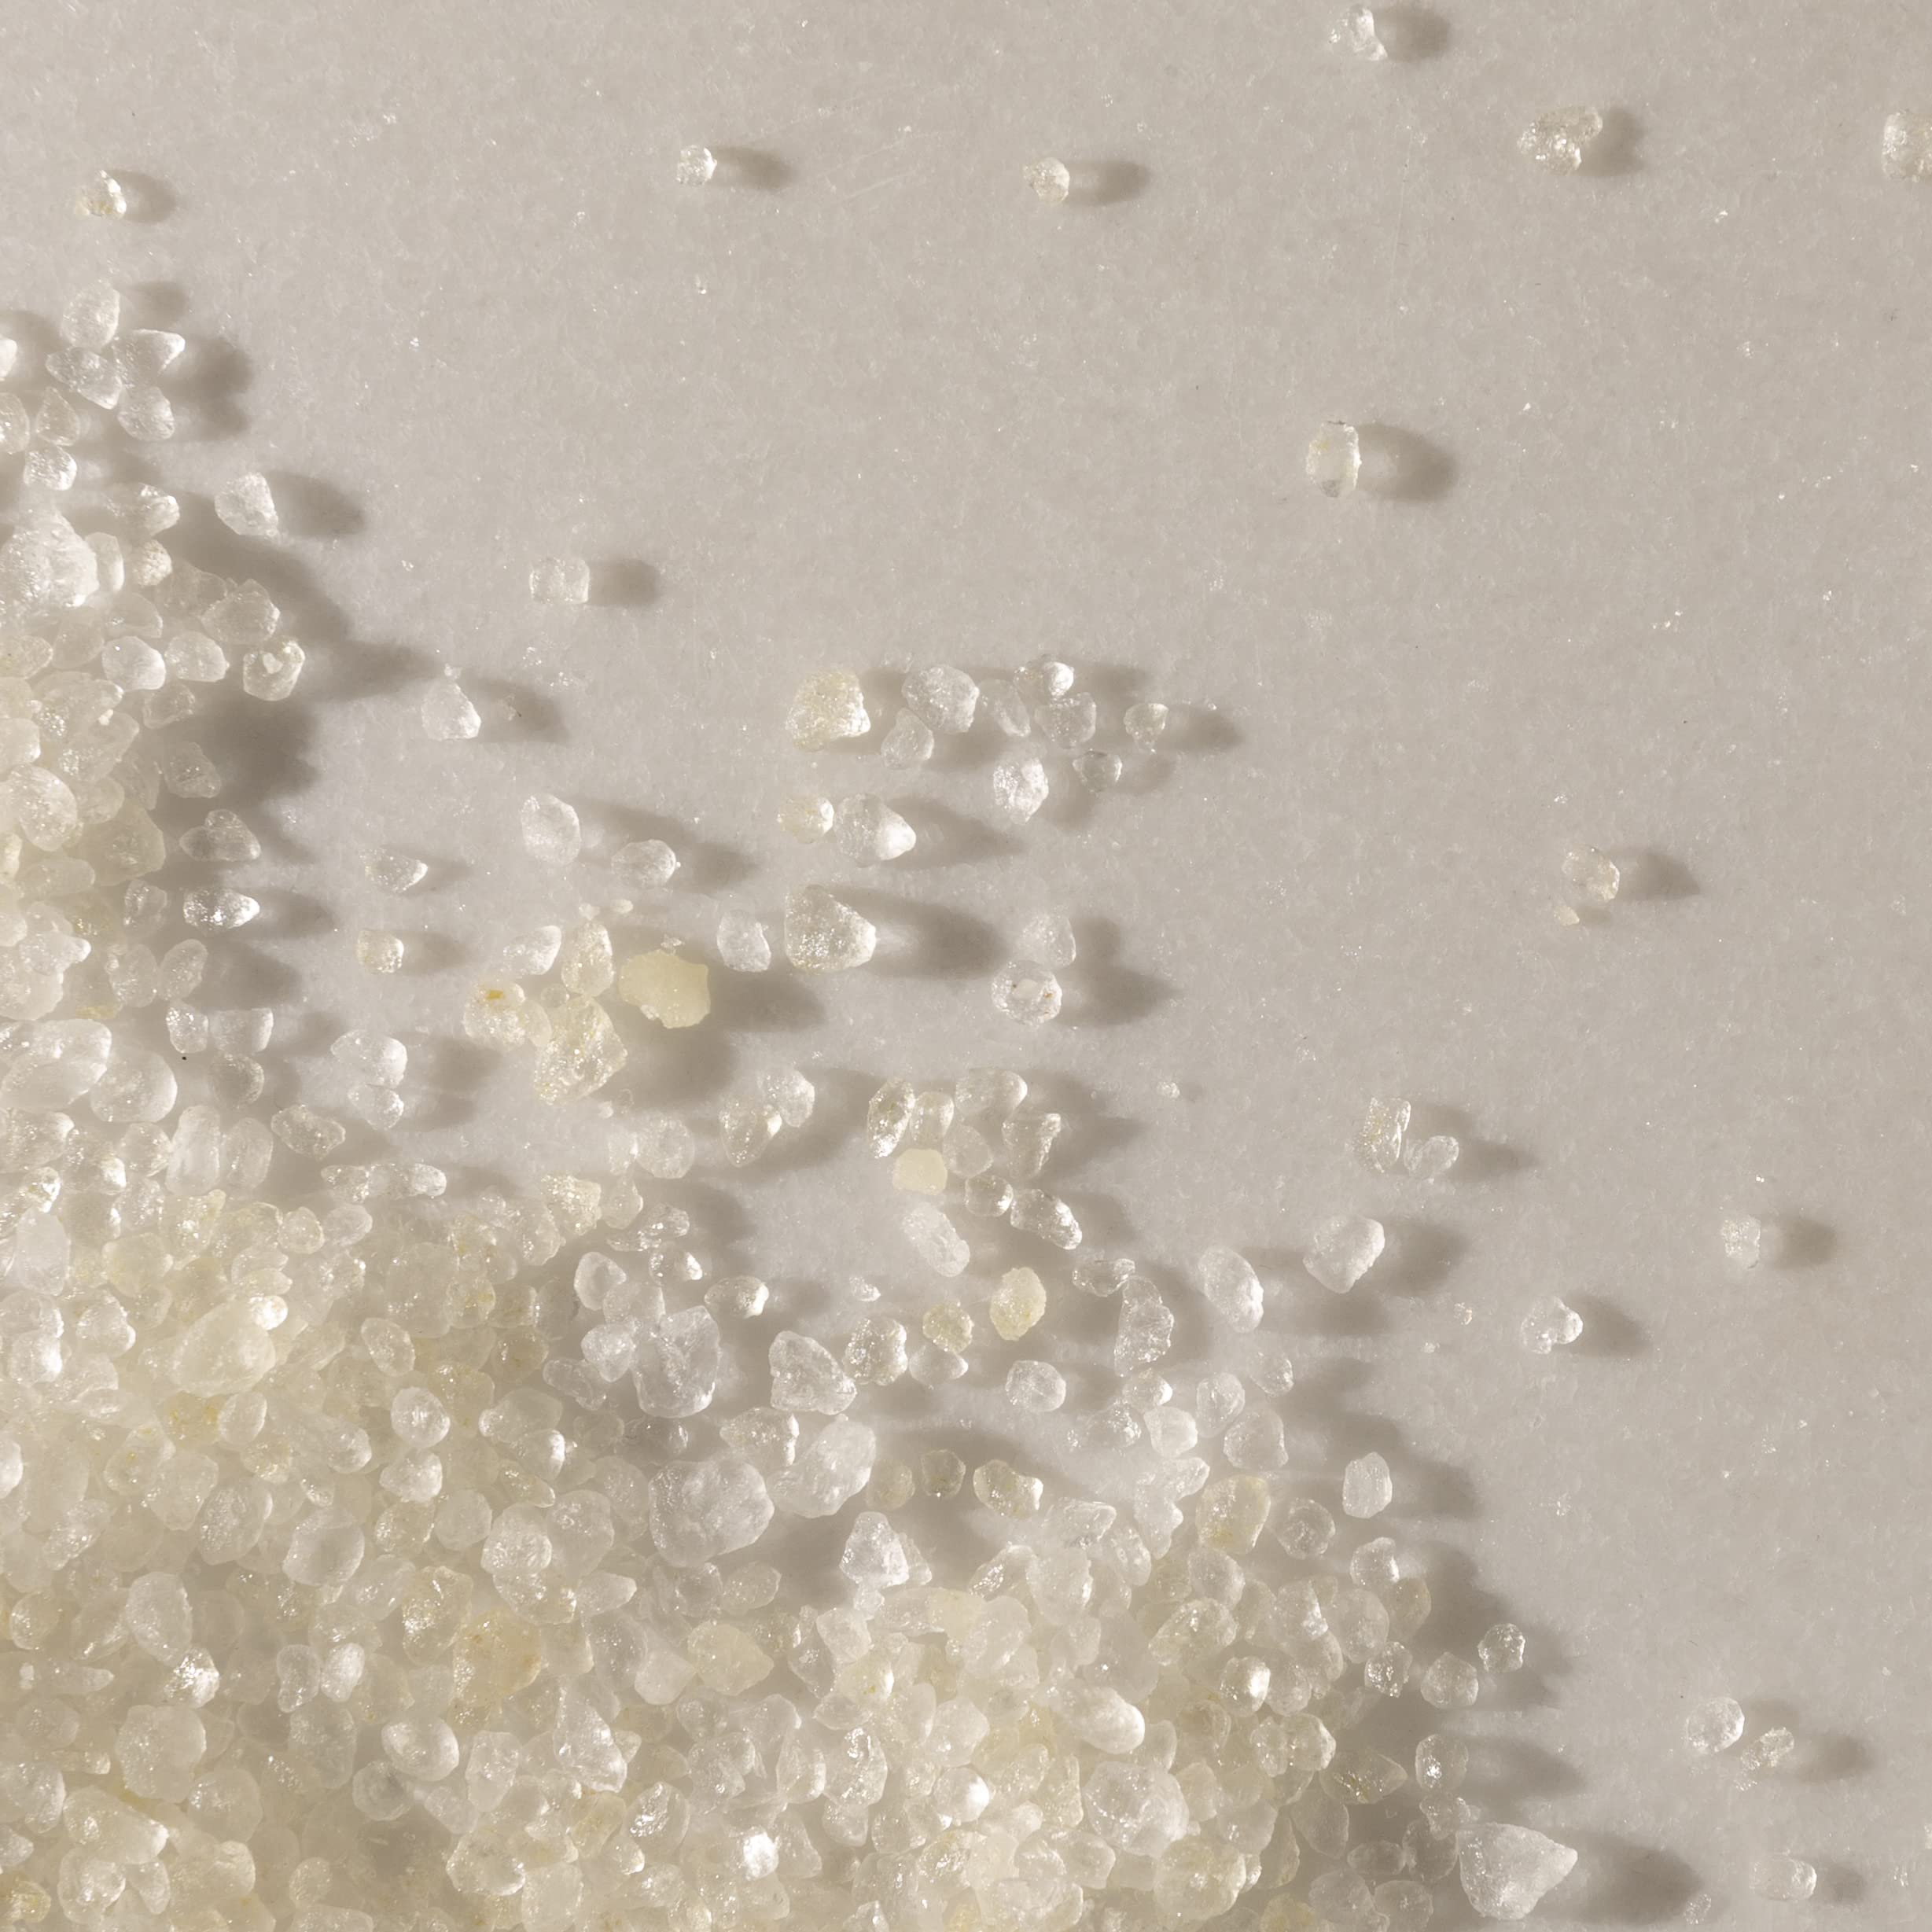 Maude Soak Bundle - Soak Mineral Bath Salts with Hand-Harvested Dead Sea Salt Crystals and Vitamins - Soak No. 1 + No. 2 (8 oz, Two Count)